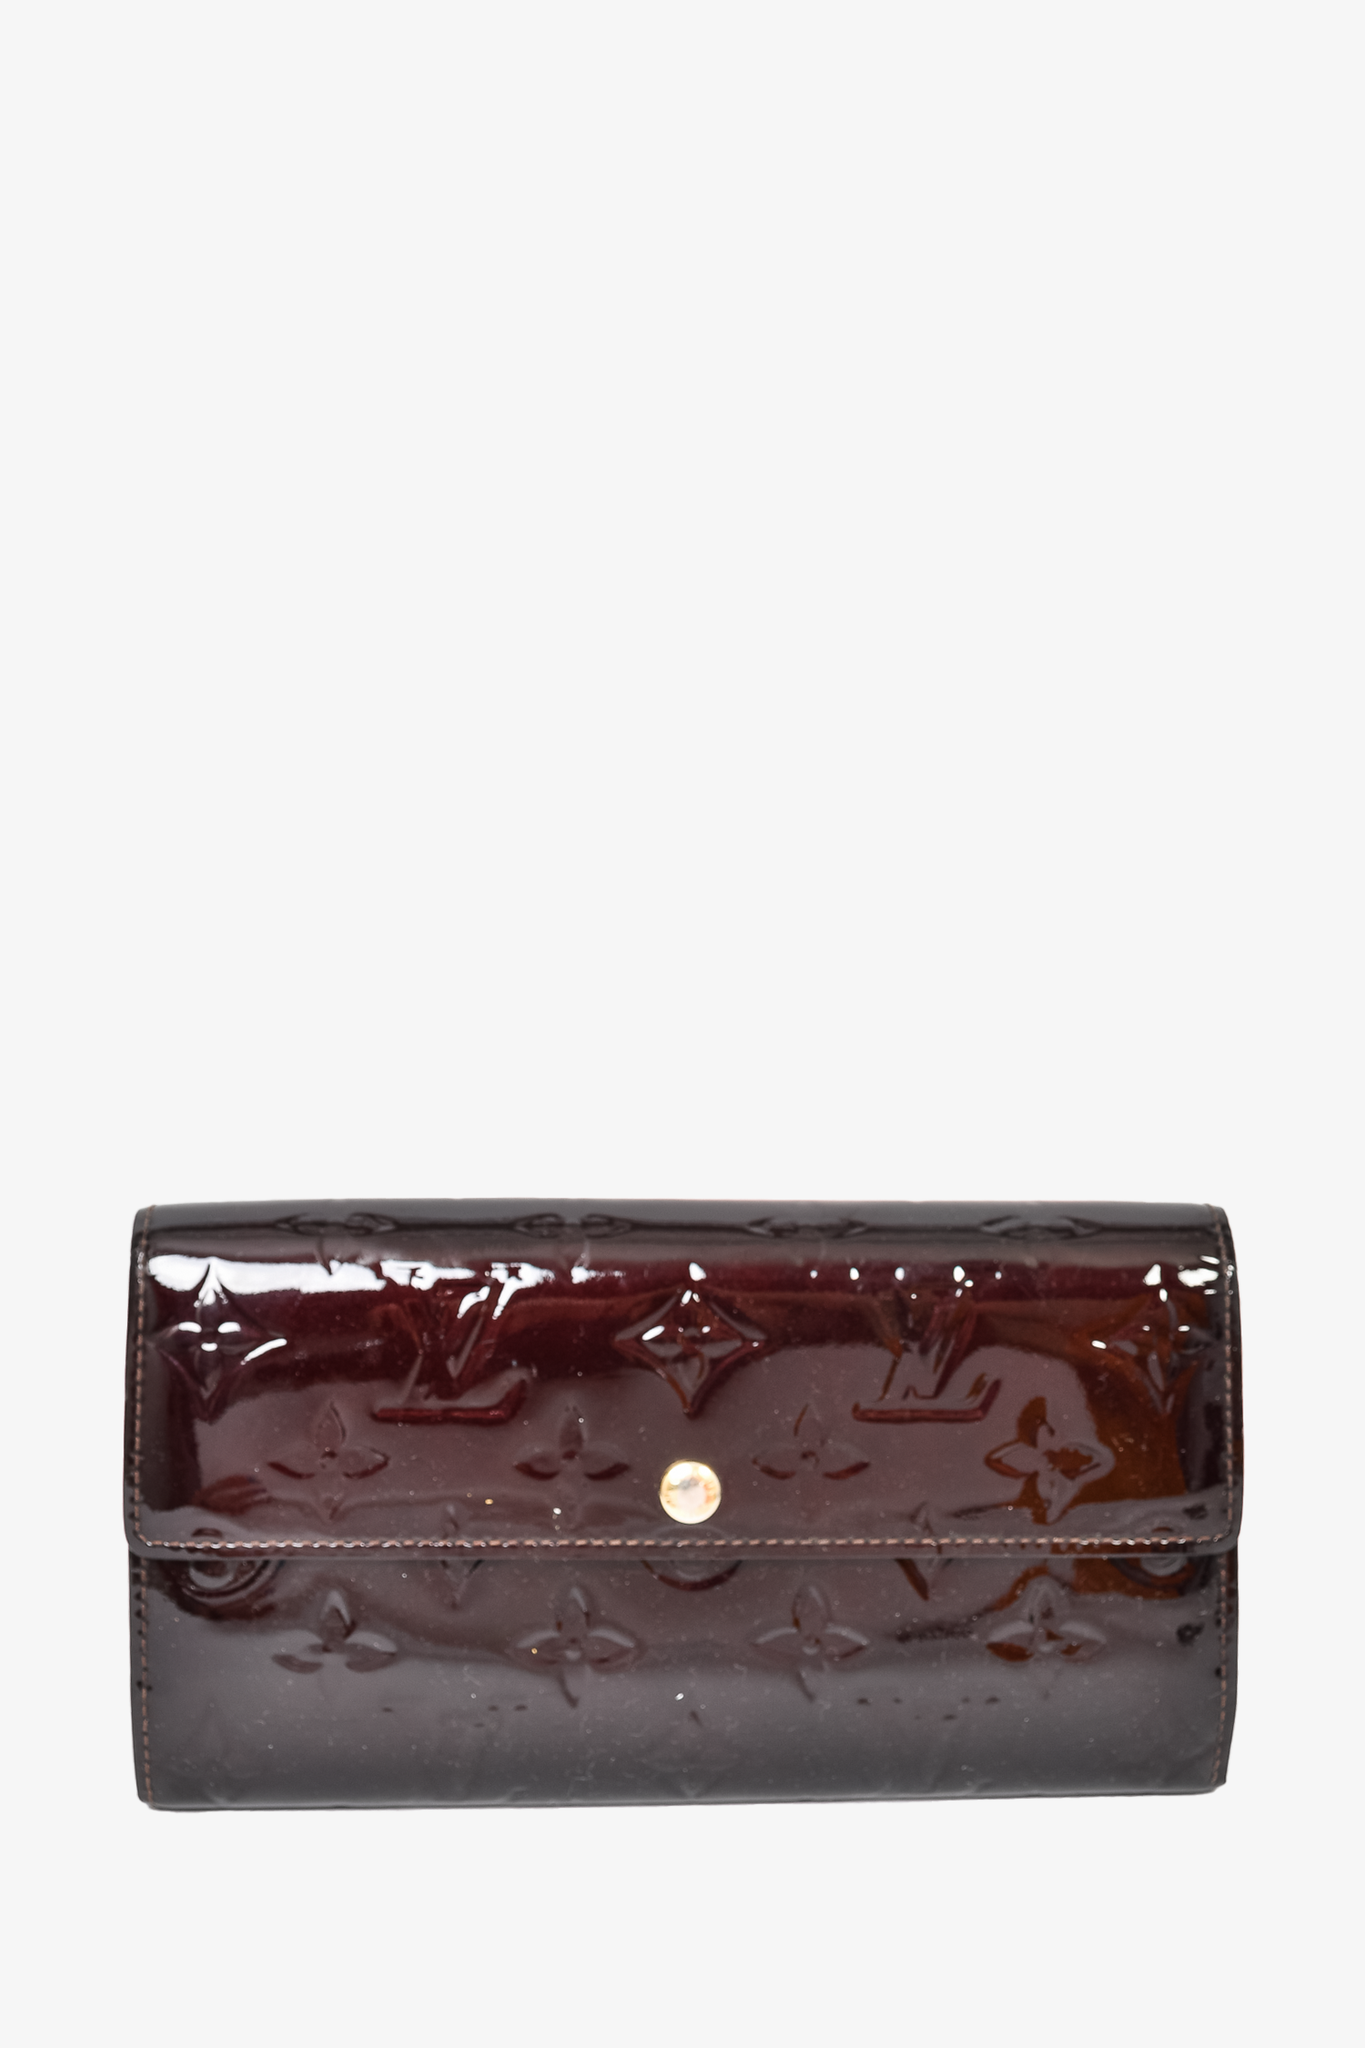 vuitton amarante monogram vernis leather